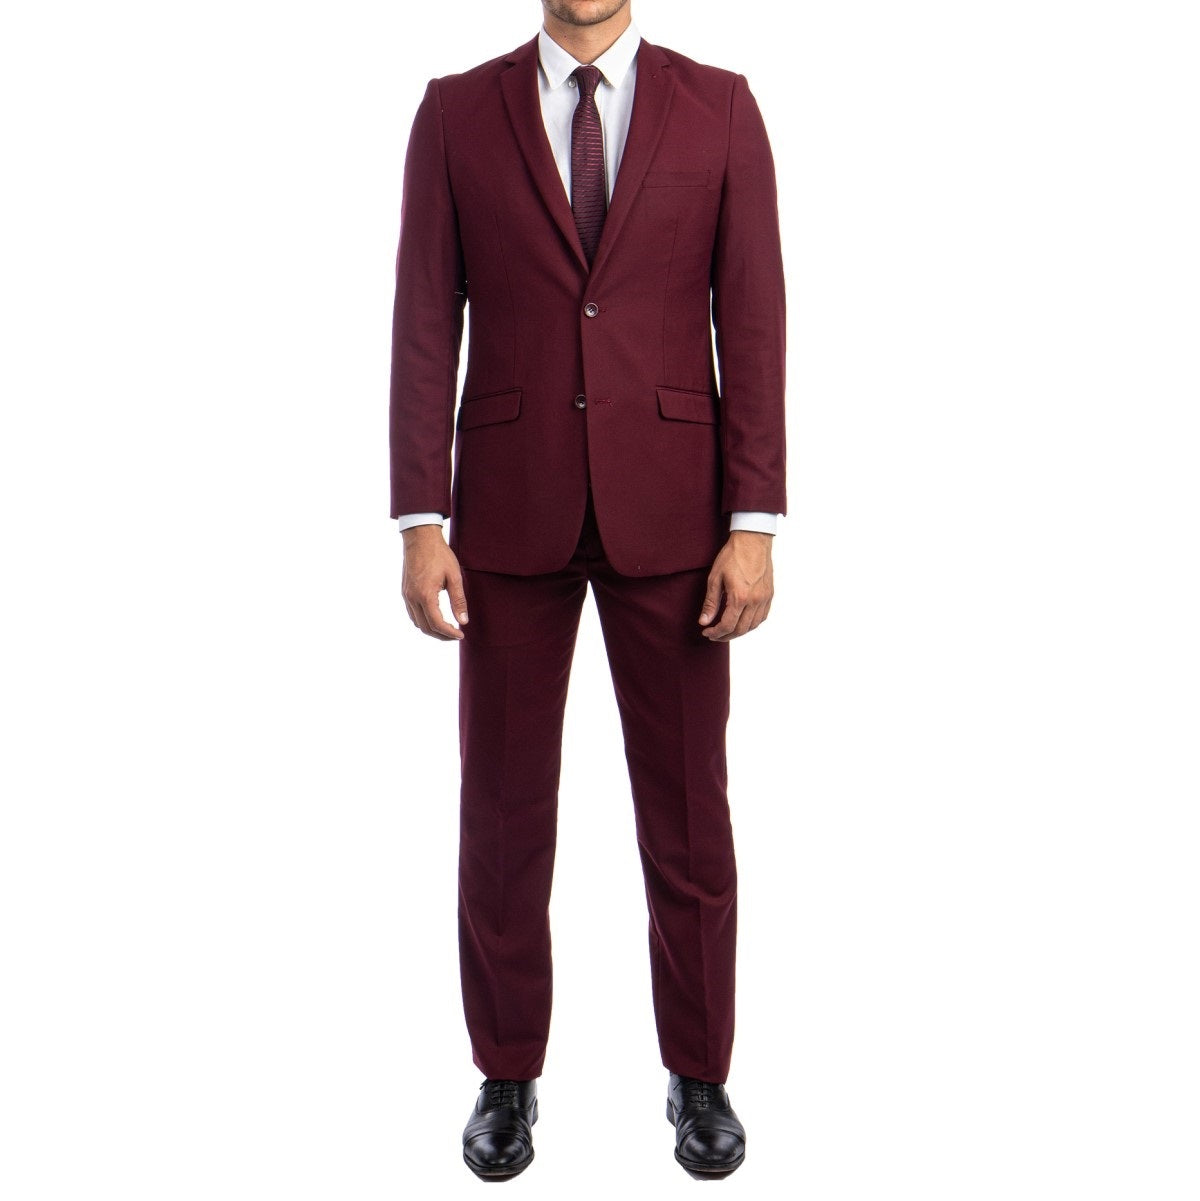 Traje Formal para Hombre TA-M276S-04 Burgundy - Formal Suit for Men